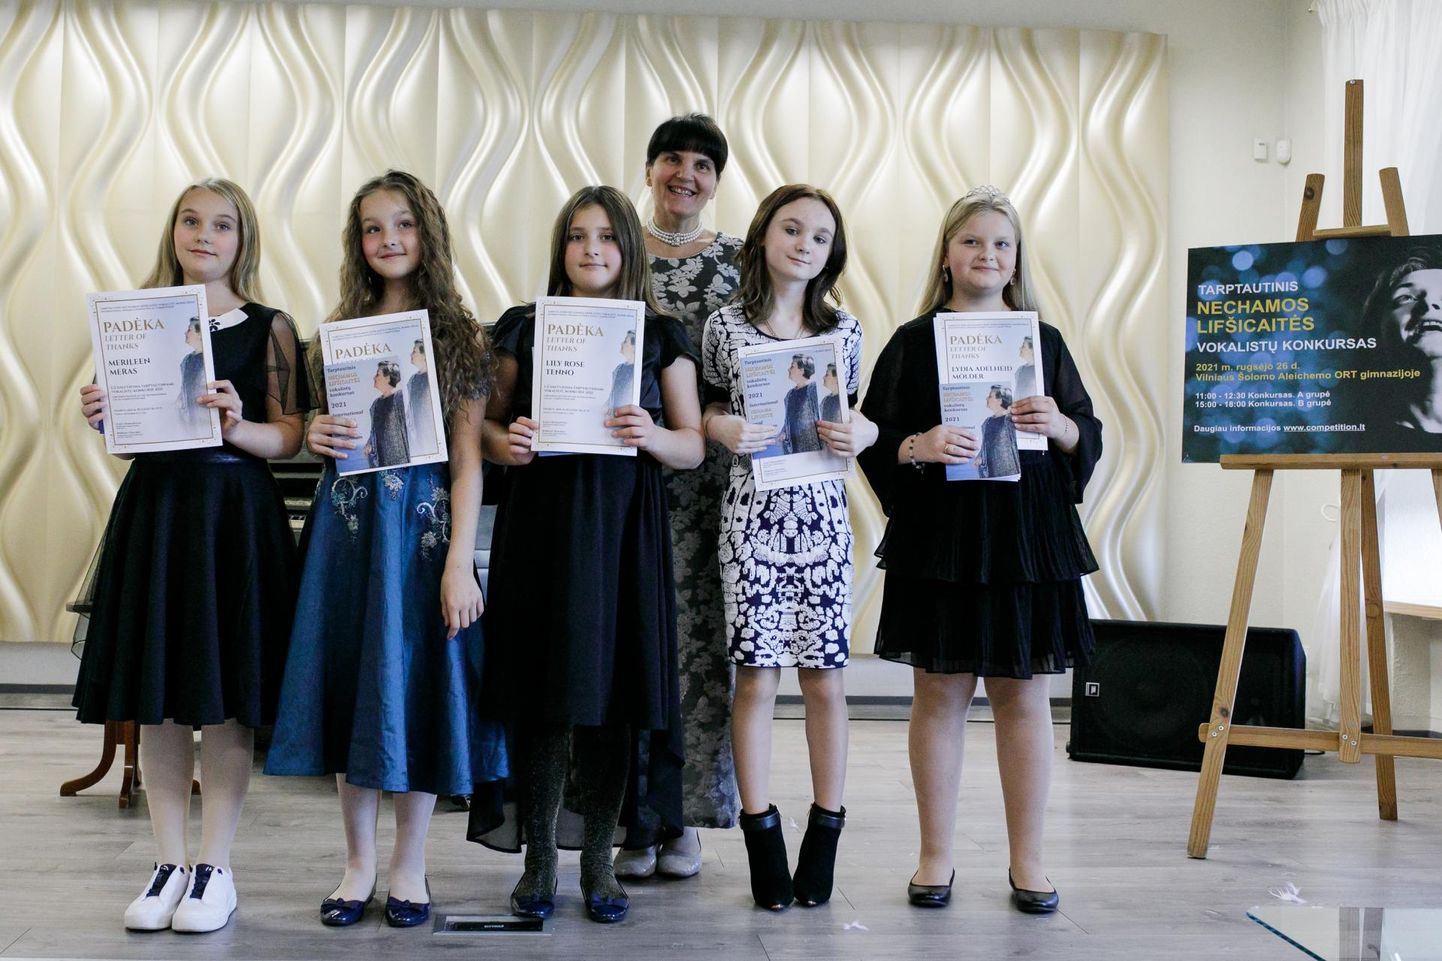 Pärnu kunstide kooli laulusolistid Vilniuses toimunud rahvusvahelisel konkursil, mis oli pühendatud juudi lauljatarile Nechama Lifshitzile.